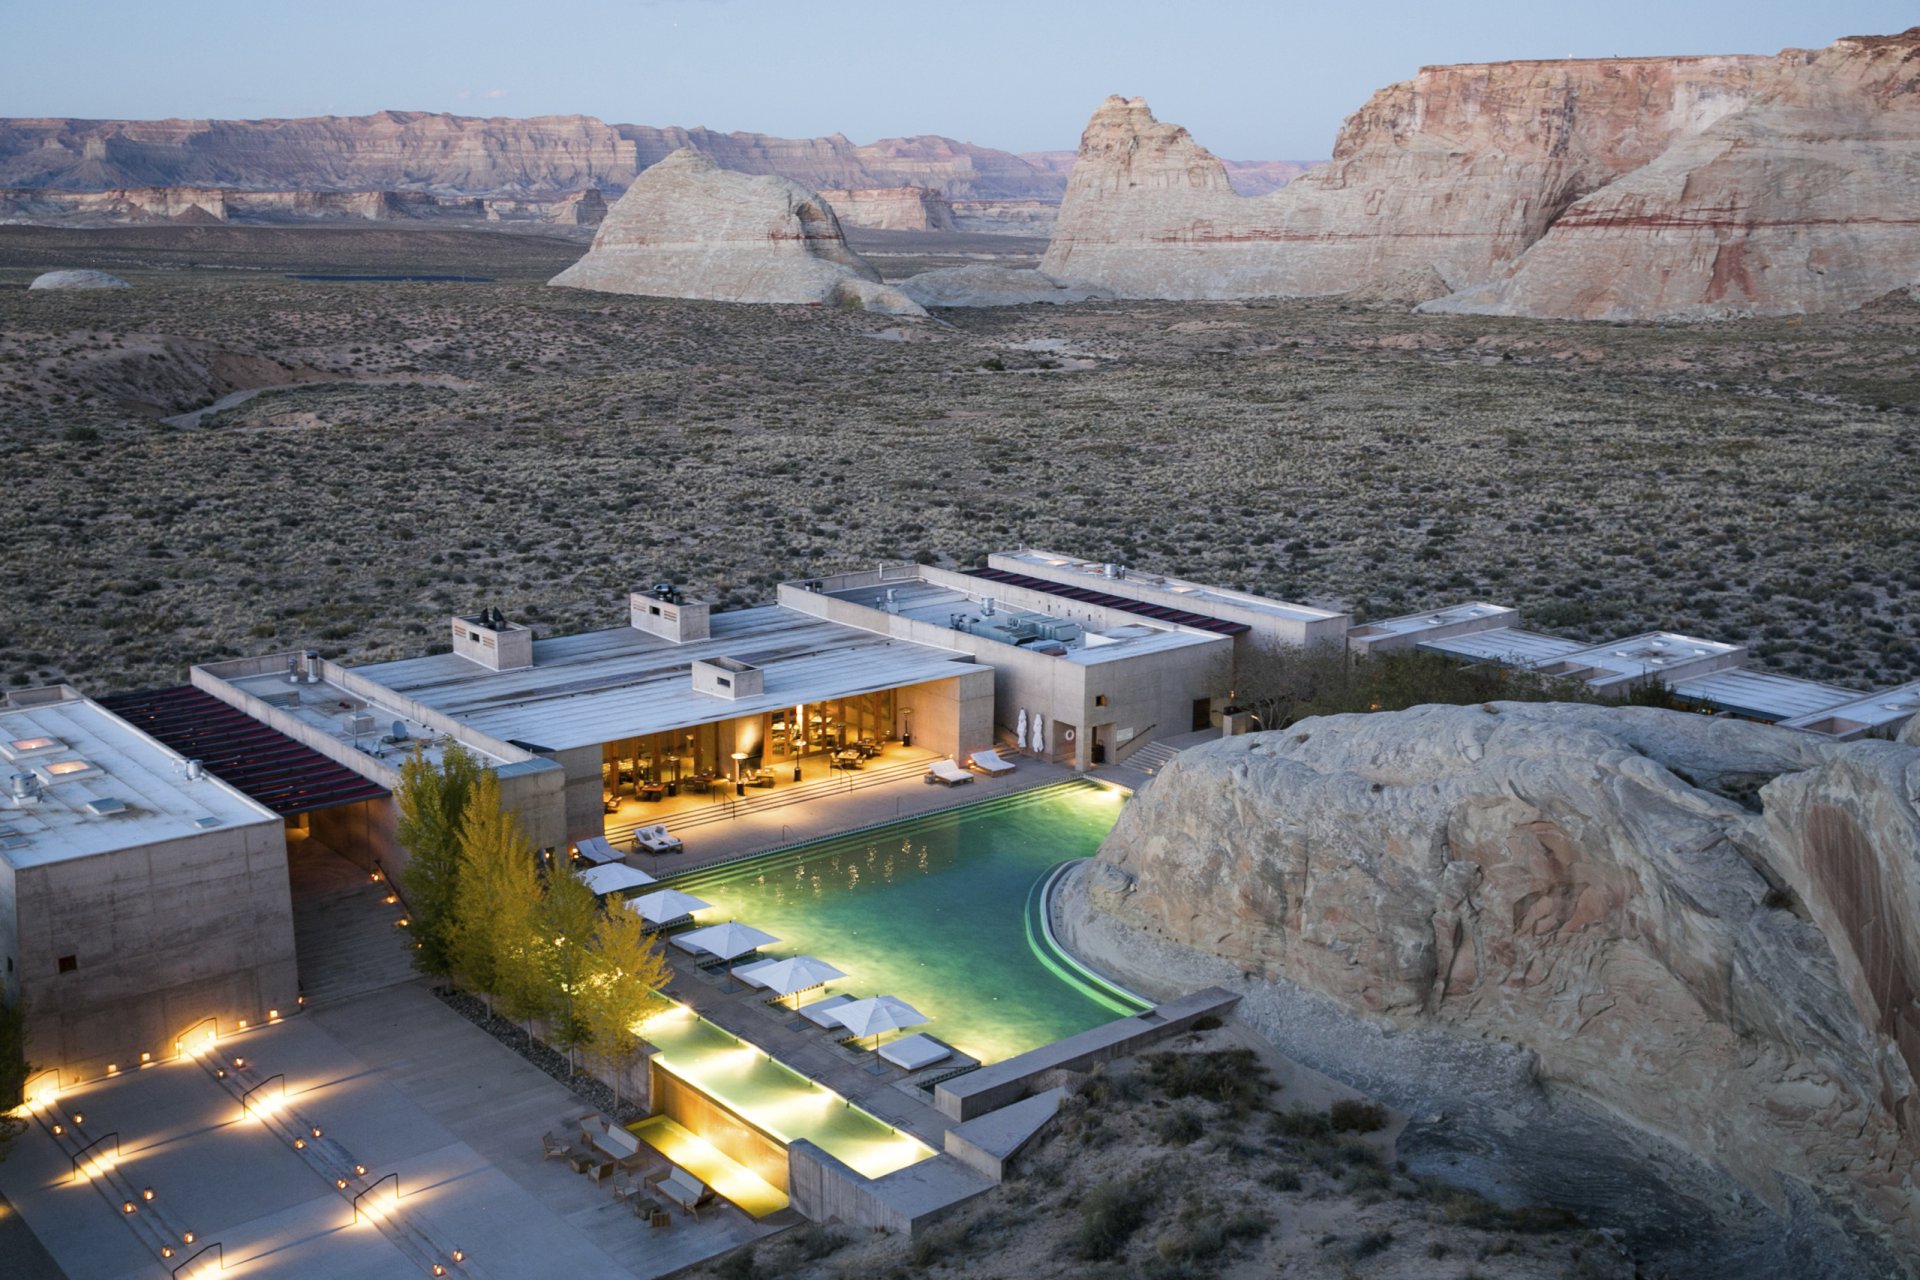 blick von oben auf das luxushotels amangiri inmitten der wüste der usa umgeben von felsigen bergen und sand mit wundervollem großen pool zur entspannung